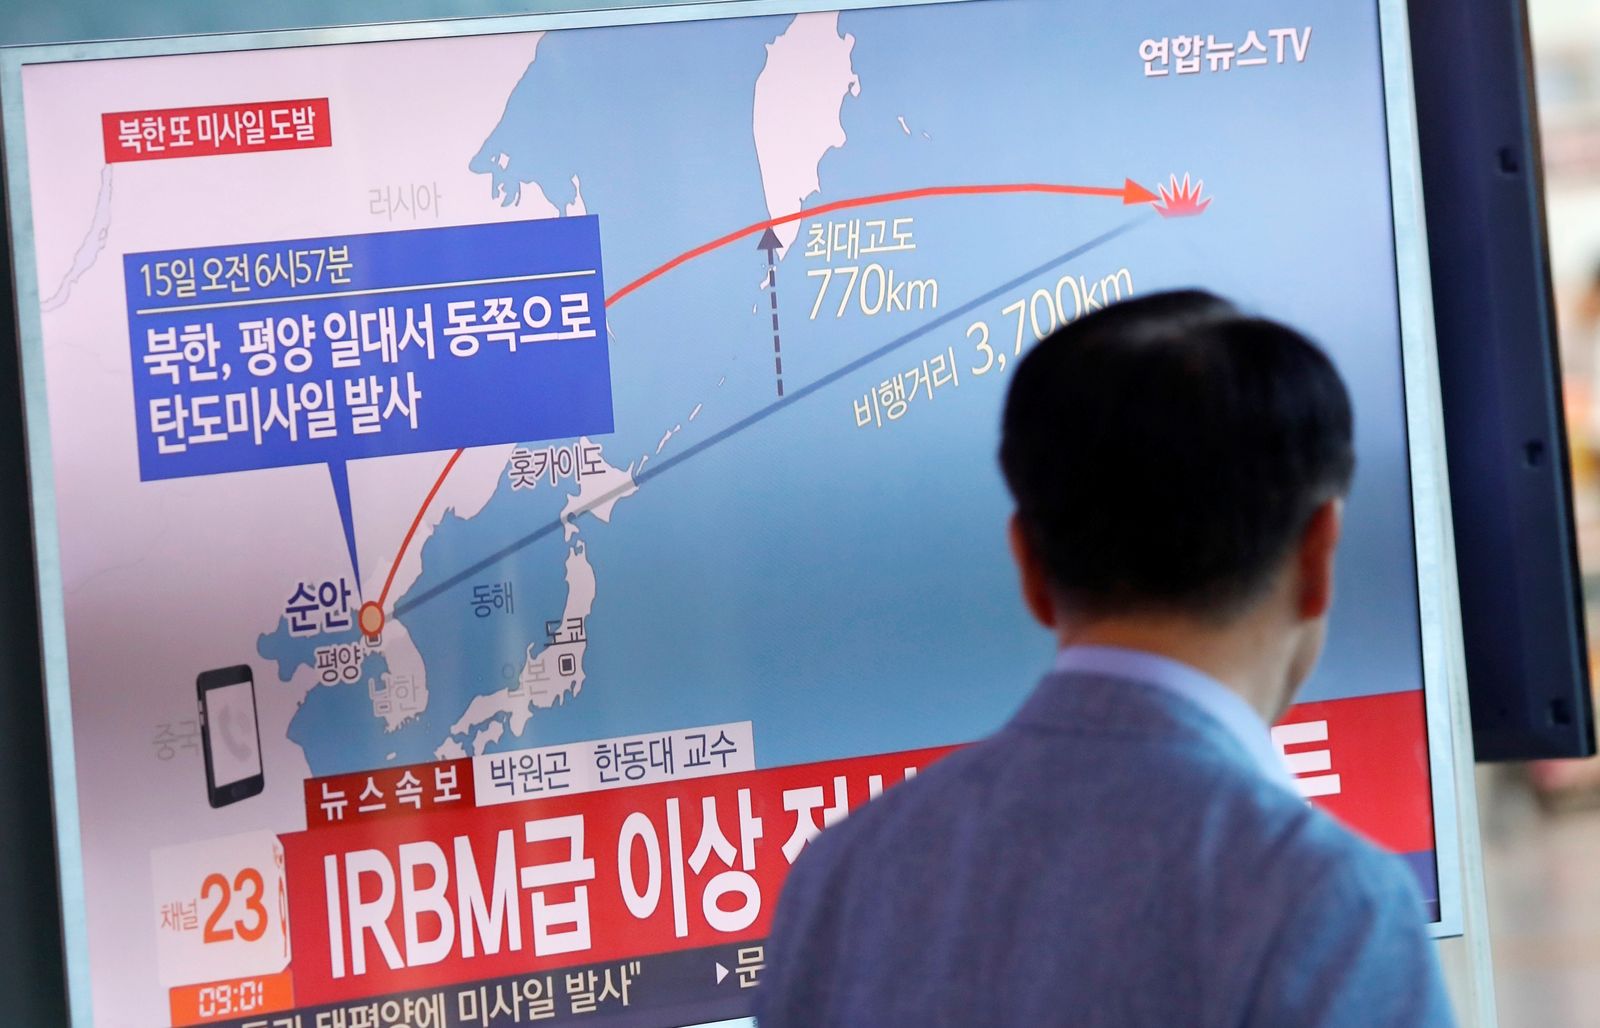 يتابع تقريراً تلفزيونياً في سيول عن إطلاق كوريا الشمالية صاروخاً حلّق فوق جزيرة هوكايدو شمال اليابان - 15 سبتمبر 2017 - REUTERS